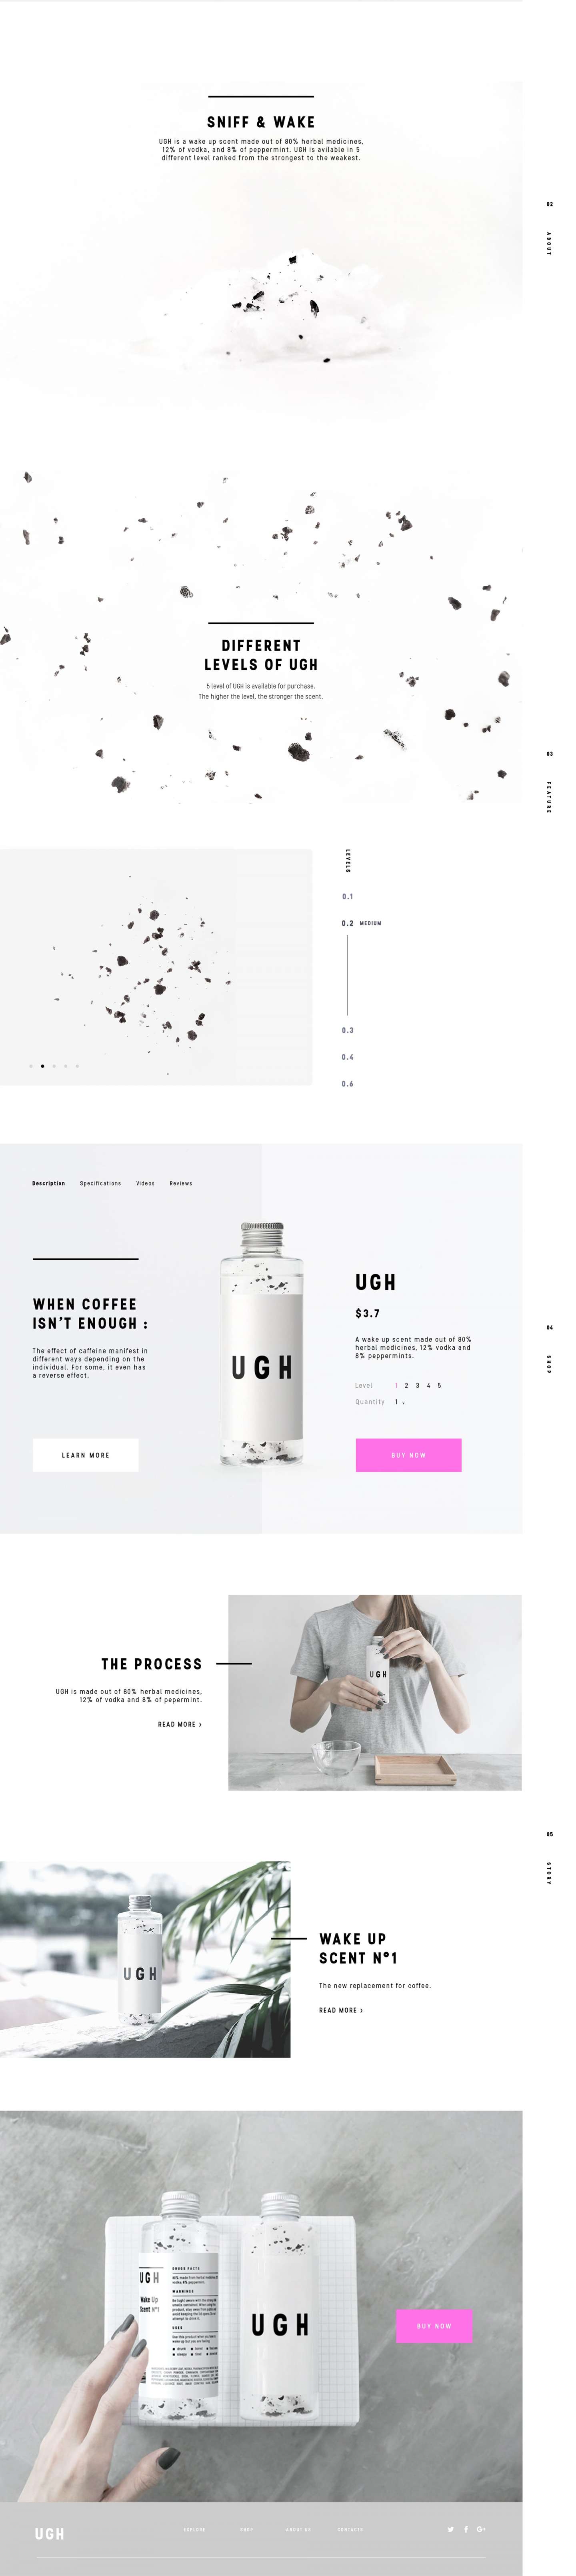 Website Design - UGH